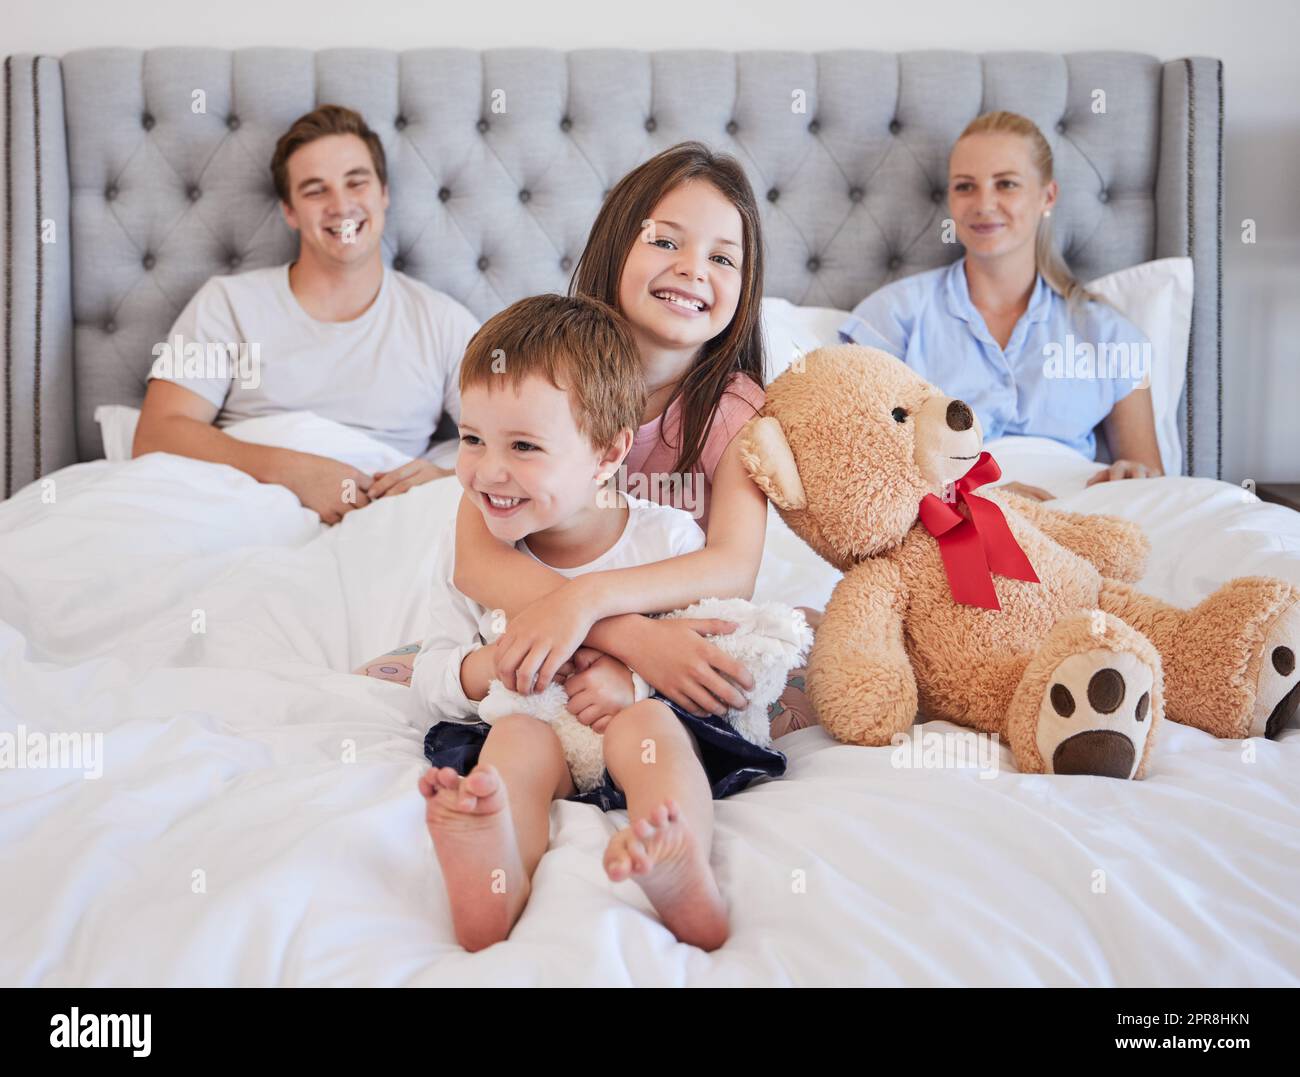 Ein bezauberndes kleines Mädchen umarmt ihren jüngeren Bruder mit ihrem Teddybär neben ihr, während sie mit ihren Eltern im Hintergrund auf einem Bett sitzt. Ich liebe es, dass sich die weiße Familie anfreundet und am Morgen Zeit miteinander verbringt. Eine große Schwester zu haben, bedeutet, dass du eine hast Stockfoto